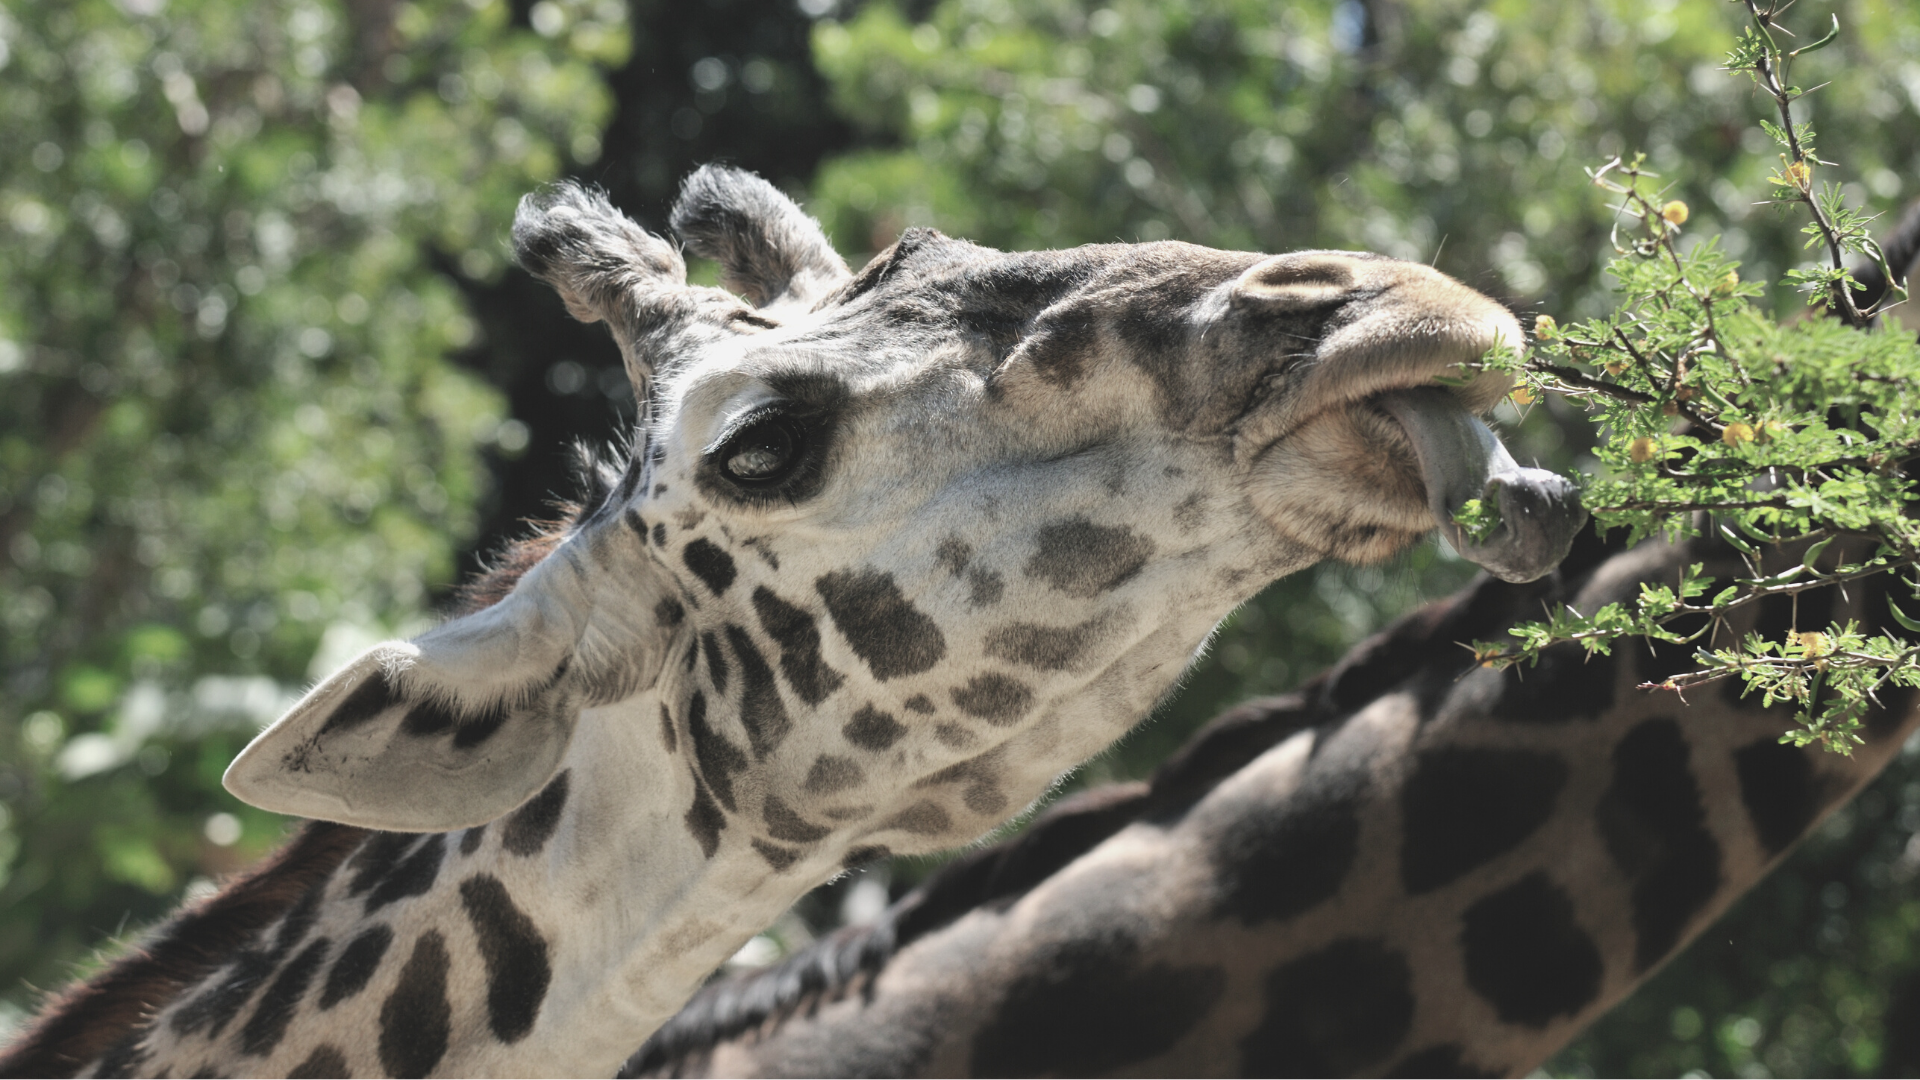 giraffe using tongue to eat a branch